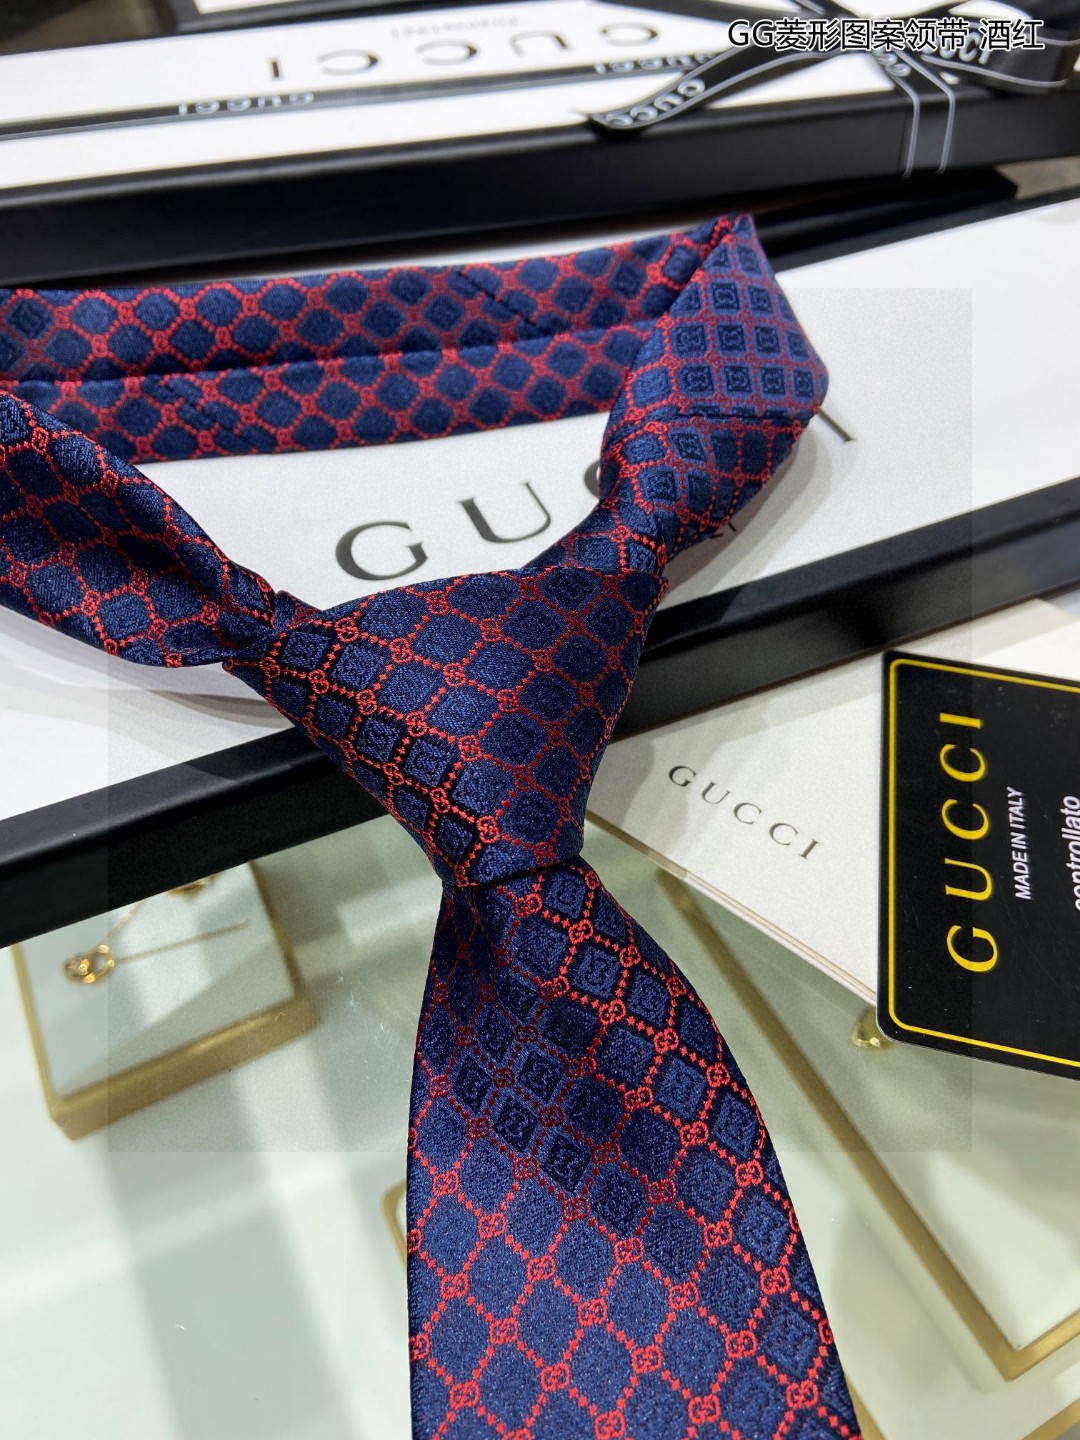 G家专柜新款GG菱形图案领带男士领带稀有采用经典小GLOGO提花展现精湛手工与时尚优雅的理想选择这款领带